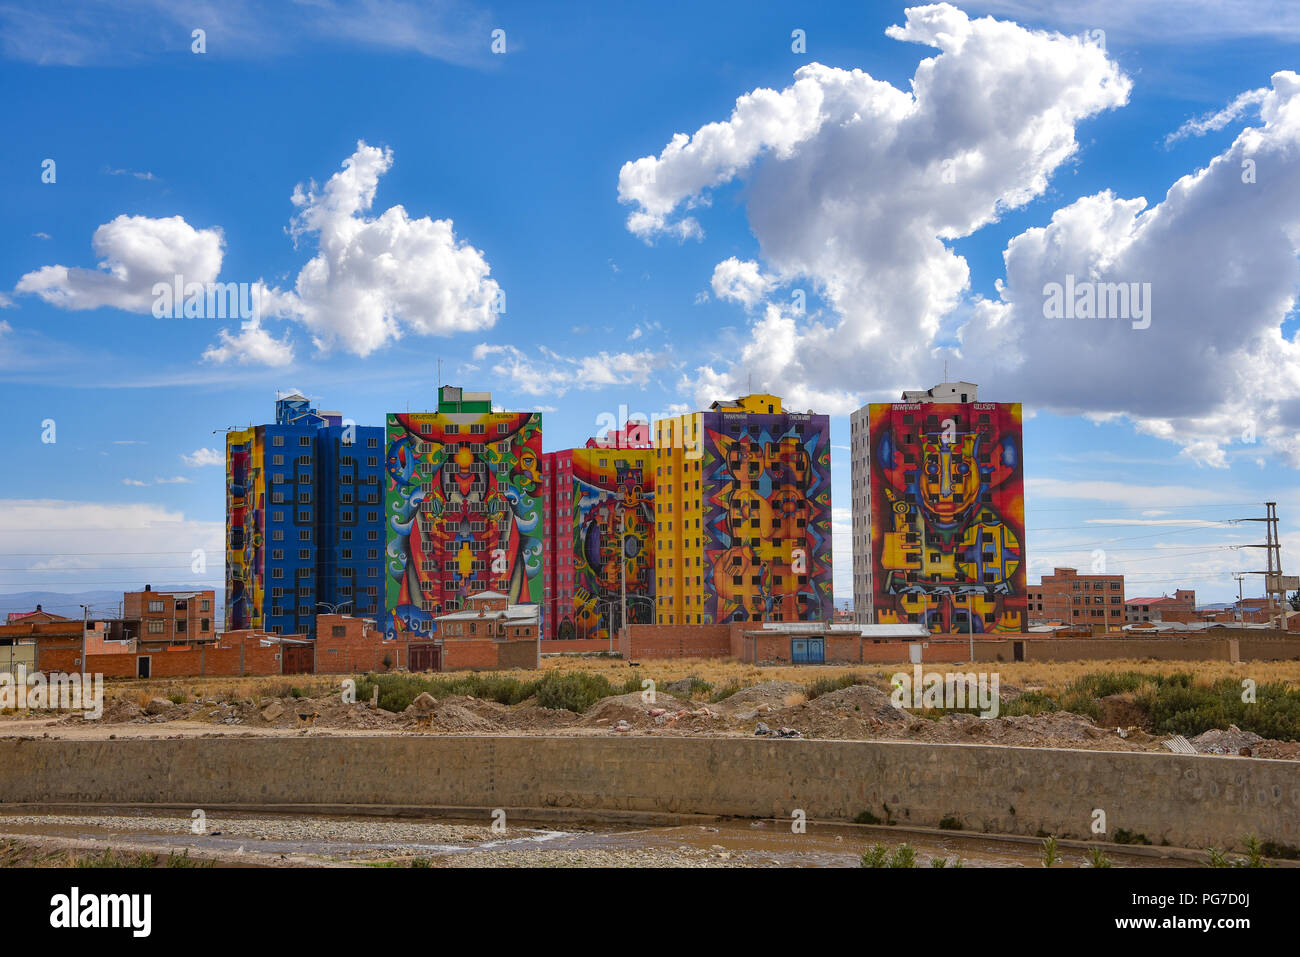 Peintures murales aux couleurs vives peintes par l'artiste bolivien Roberto Mamani Mamani sur les immeubles en copropriété à El Alto, La Paz, Bolivie Banque D'Images